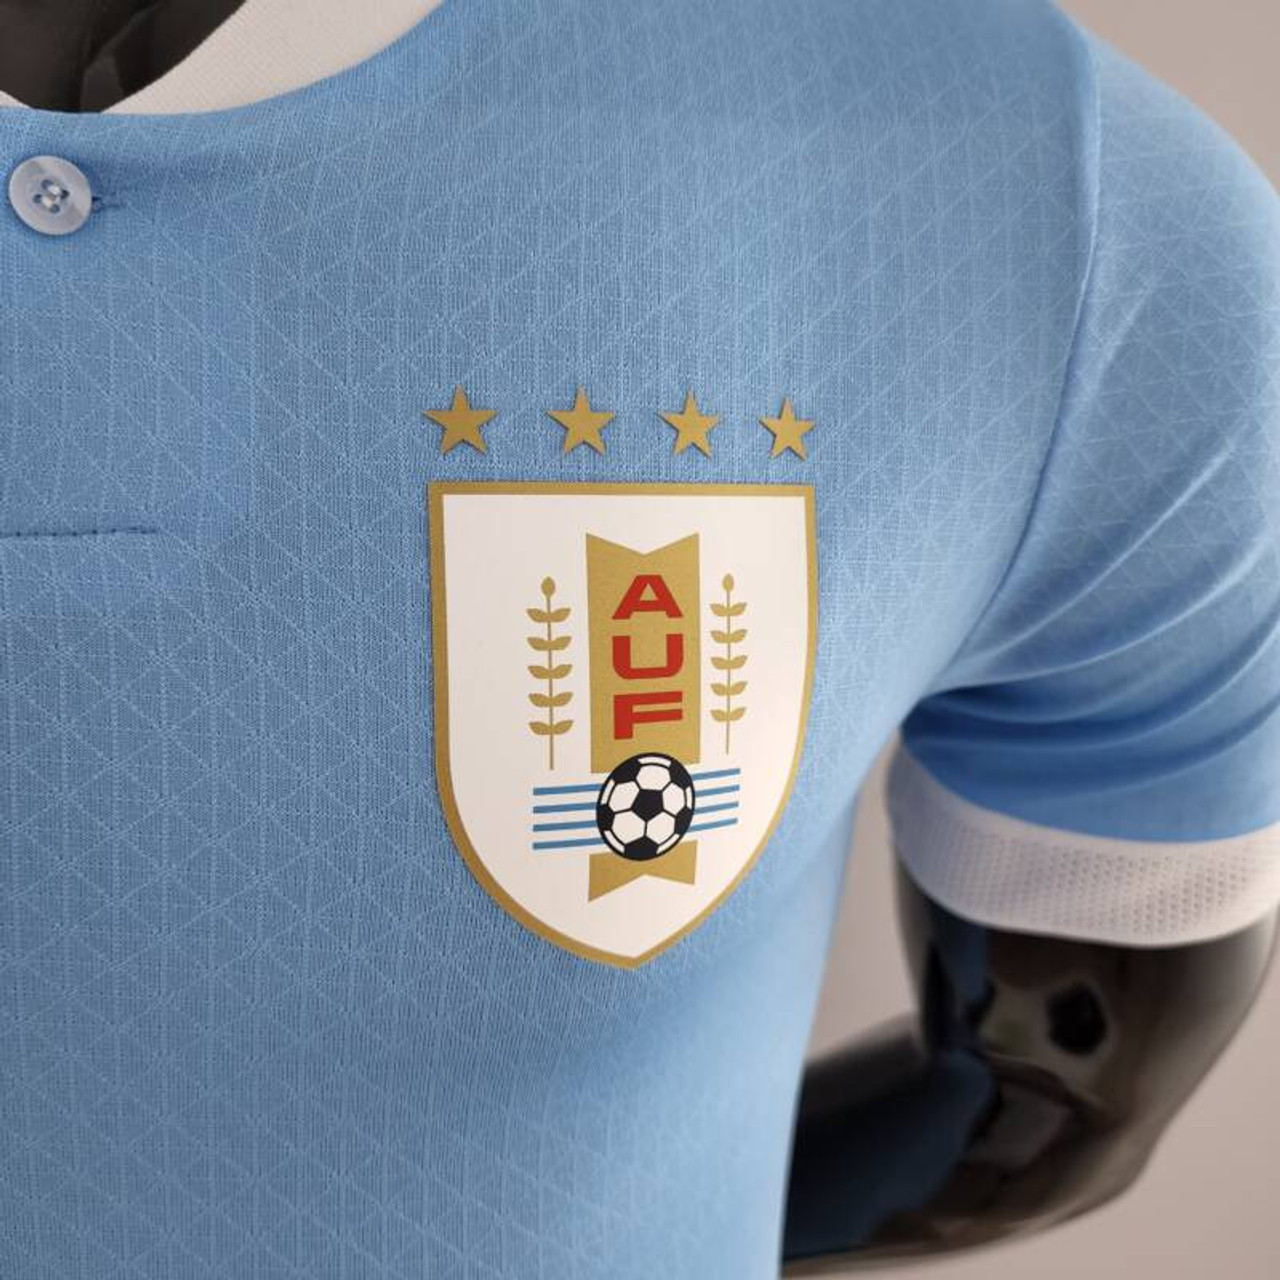 venganza Noticias sesión Men's Shirt Selección Uruguaya Camiseta Celeste Remera Titular Official  Soccer Team Shirt Uruguay by Puma - 2022 Edition - Pampa Direct